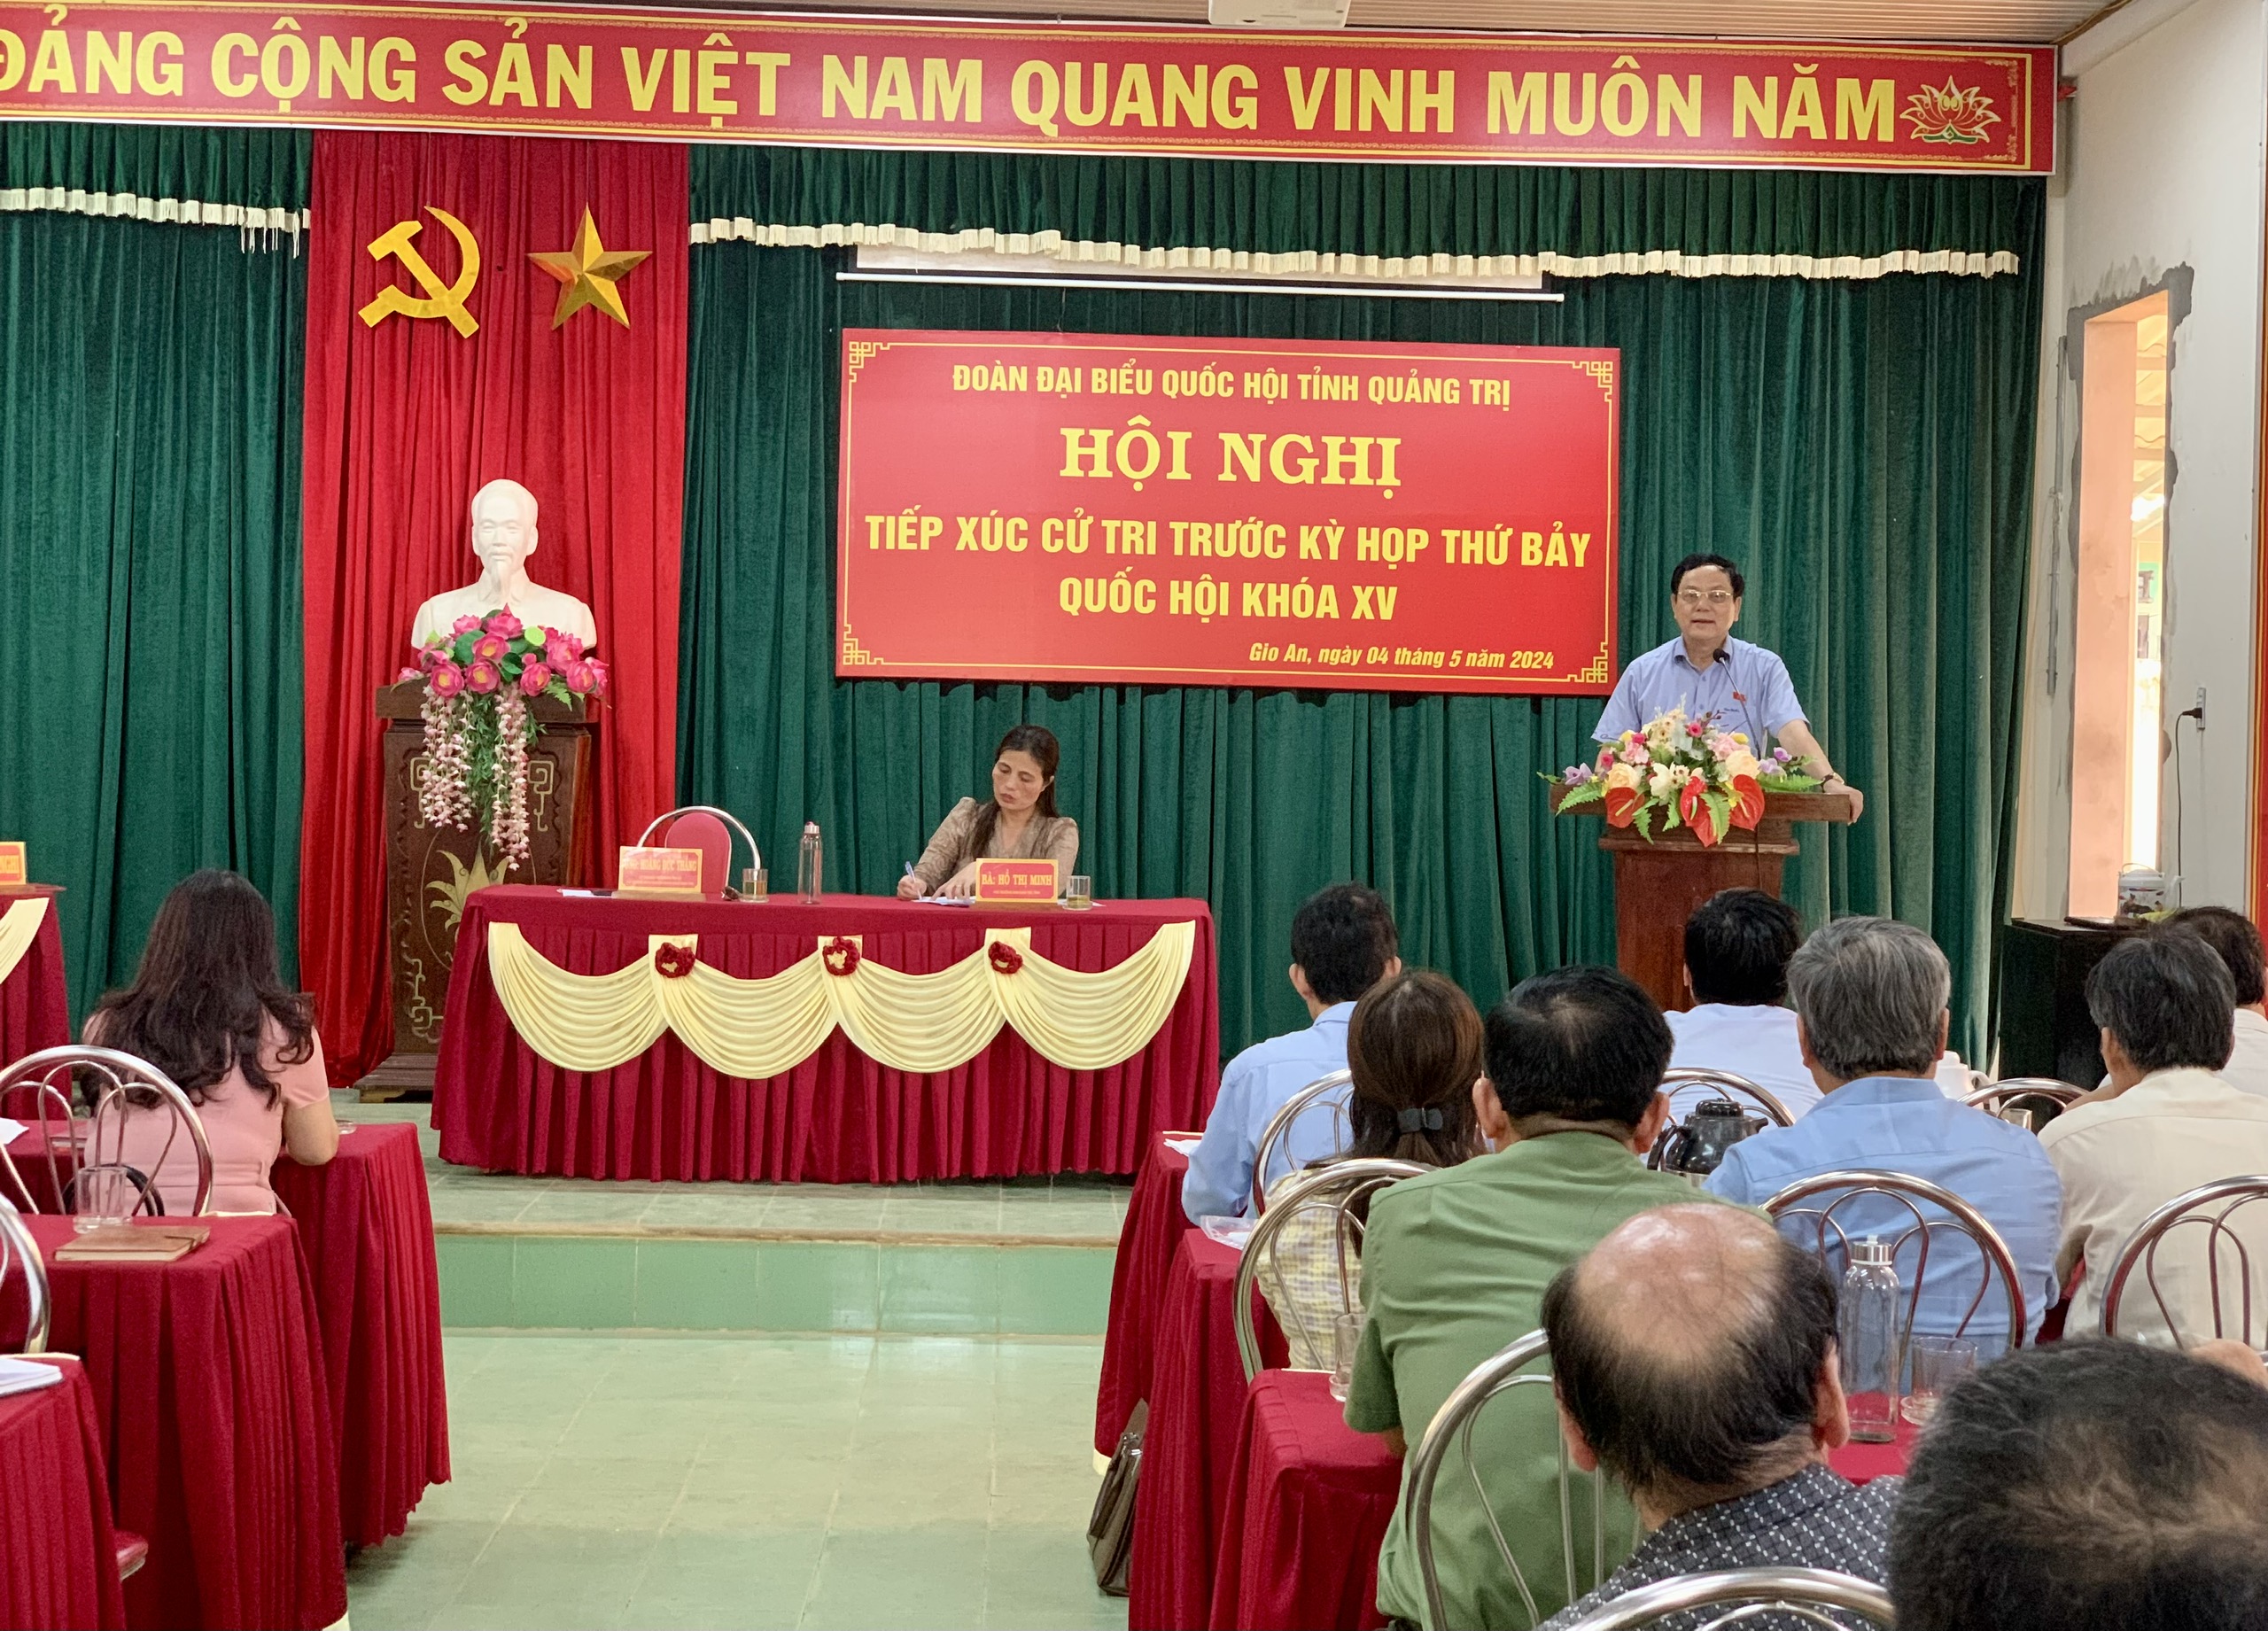 Toàn cảnh buổi tiếp xúc cử tri tại xã Gio An, huyện Gio Linh